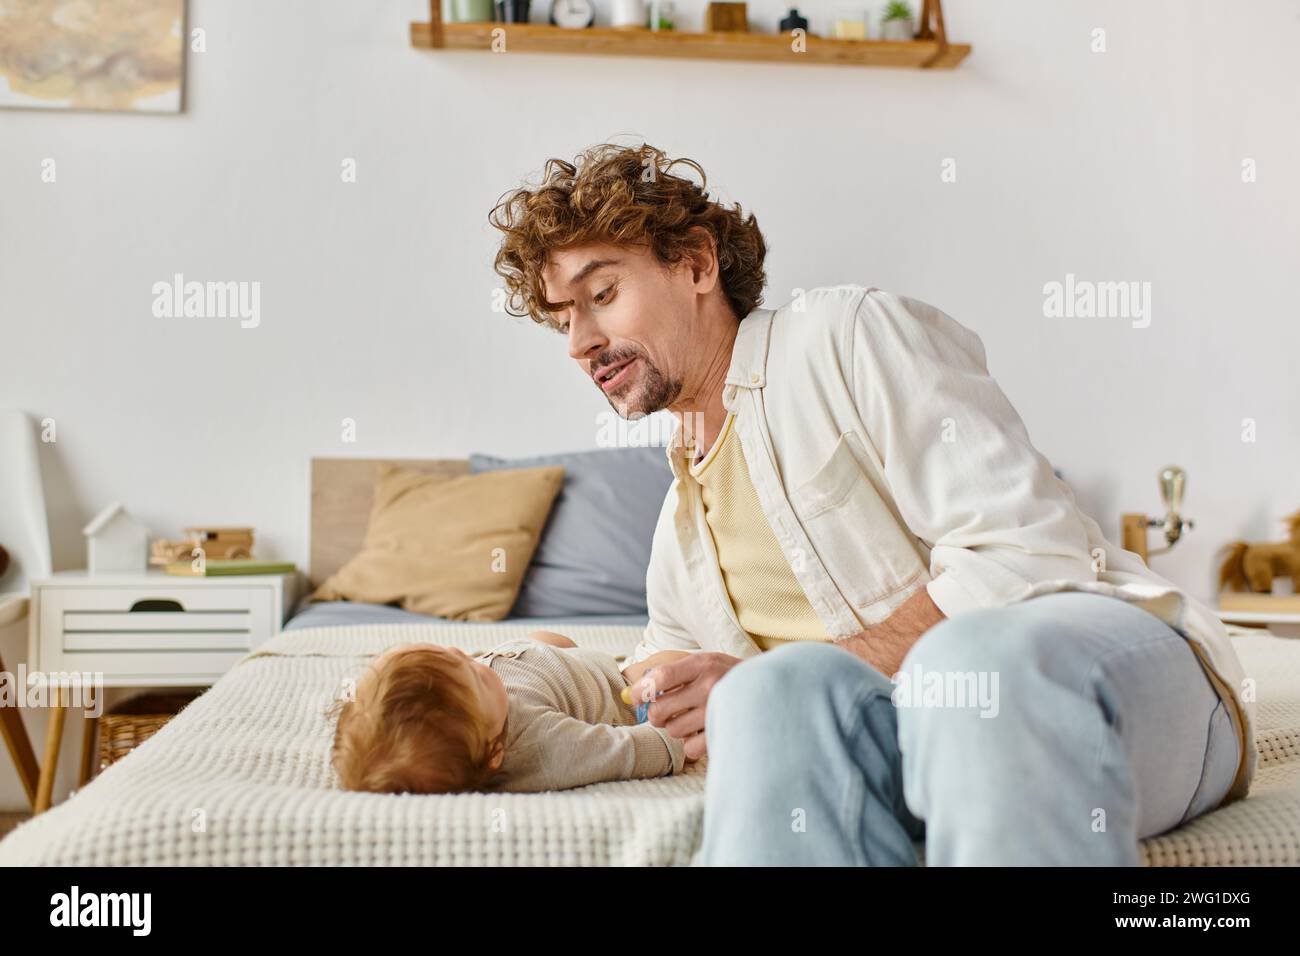 Alleinerziehender Vater mit lockigen Haaren, der einen Schnuller in der Nähe des kleinen Jungen auf dem Bett hält, Vaterschaft und Liebe Stockfoto